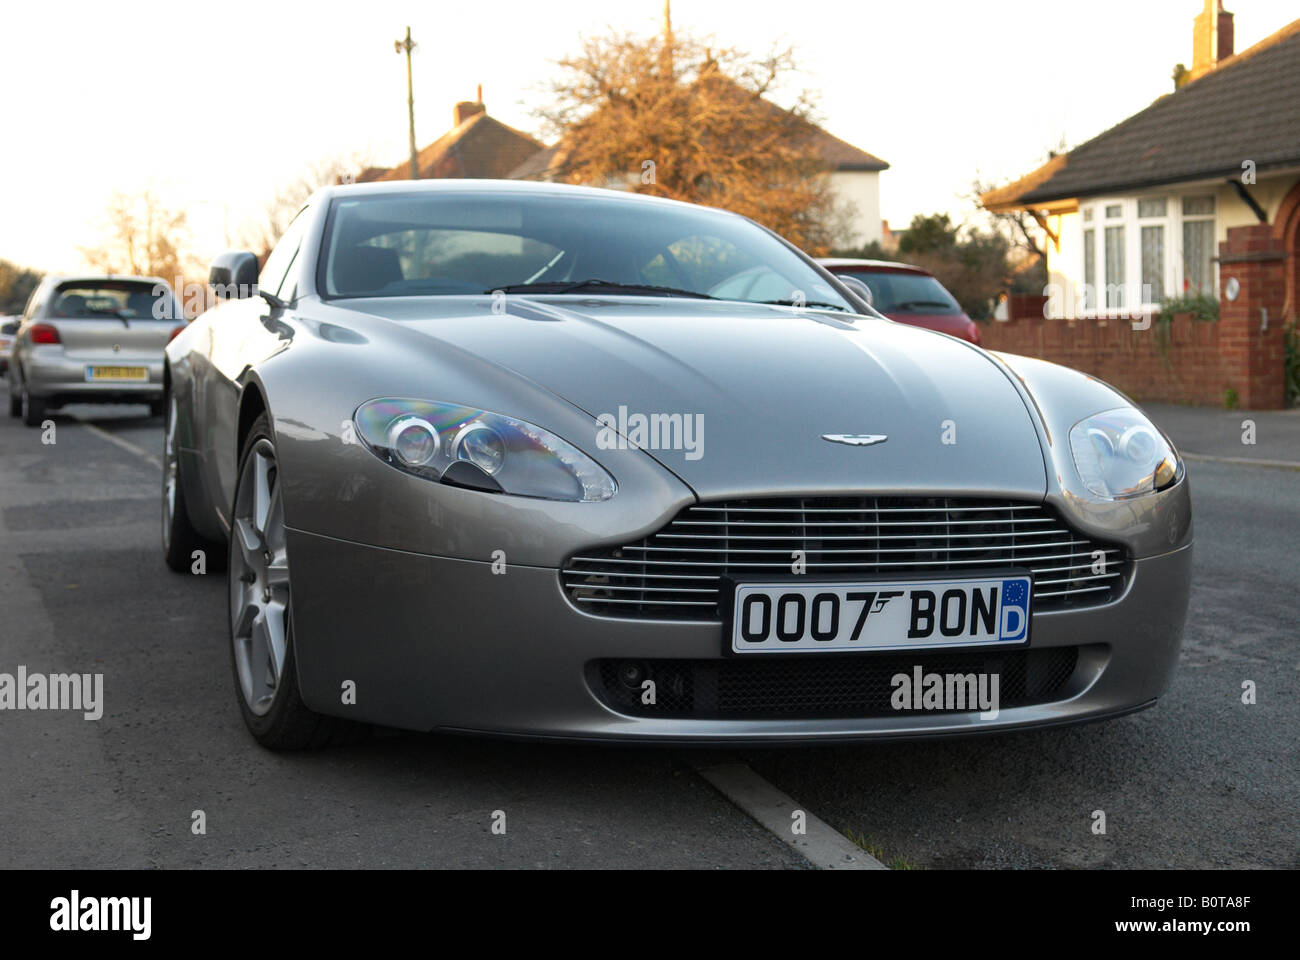 Aston Martin Vantage 007 Bond Wagennummer Platte Stockfoto